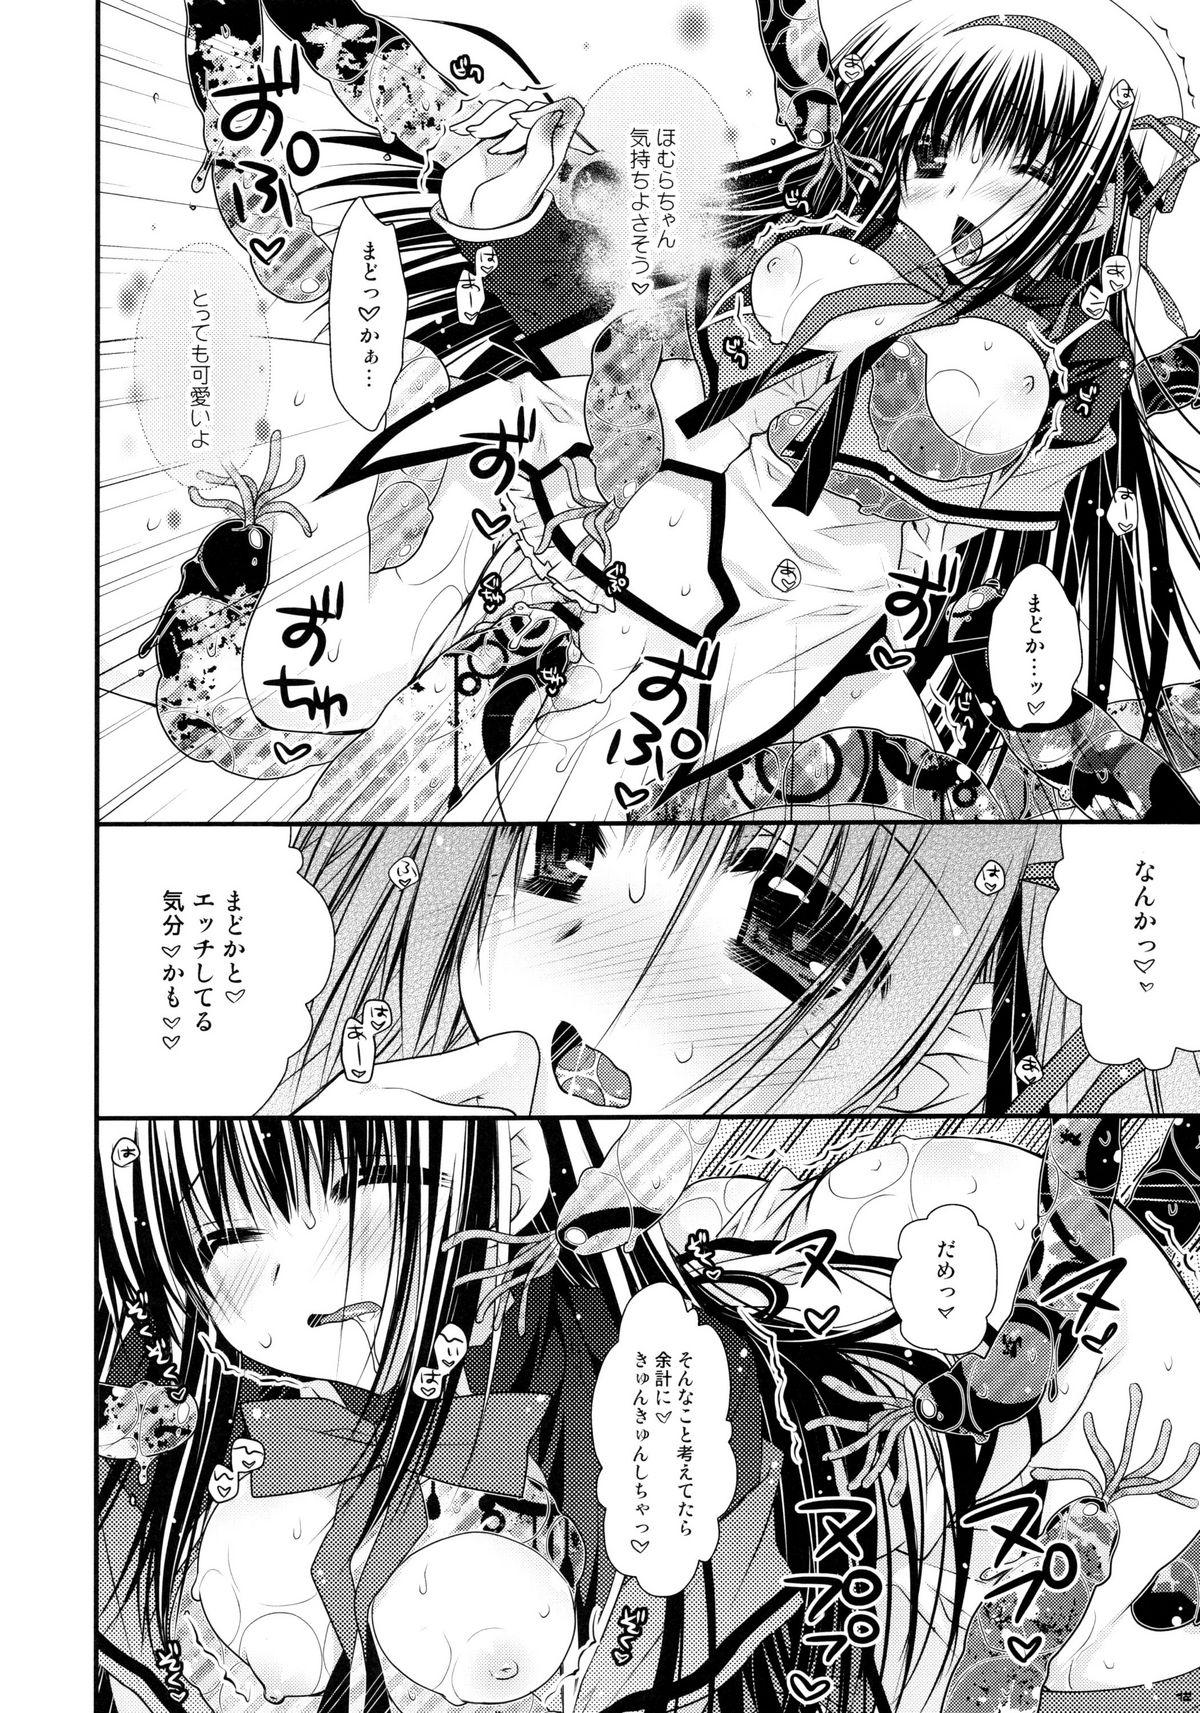 Piroca Ima no Watashi ni wa Kibou shikanai wa - Puella magi madoka magica Realitykings - Page 11